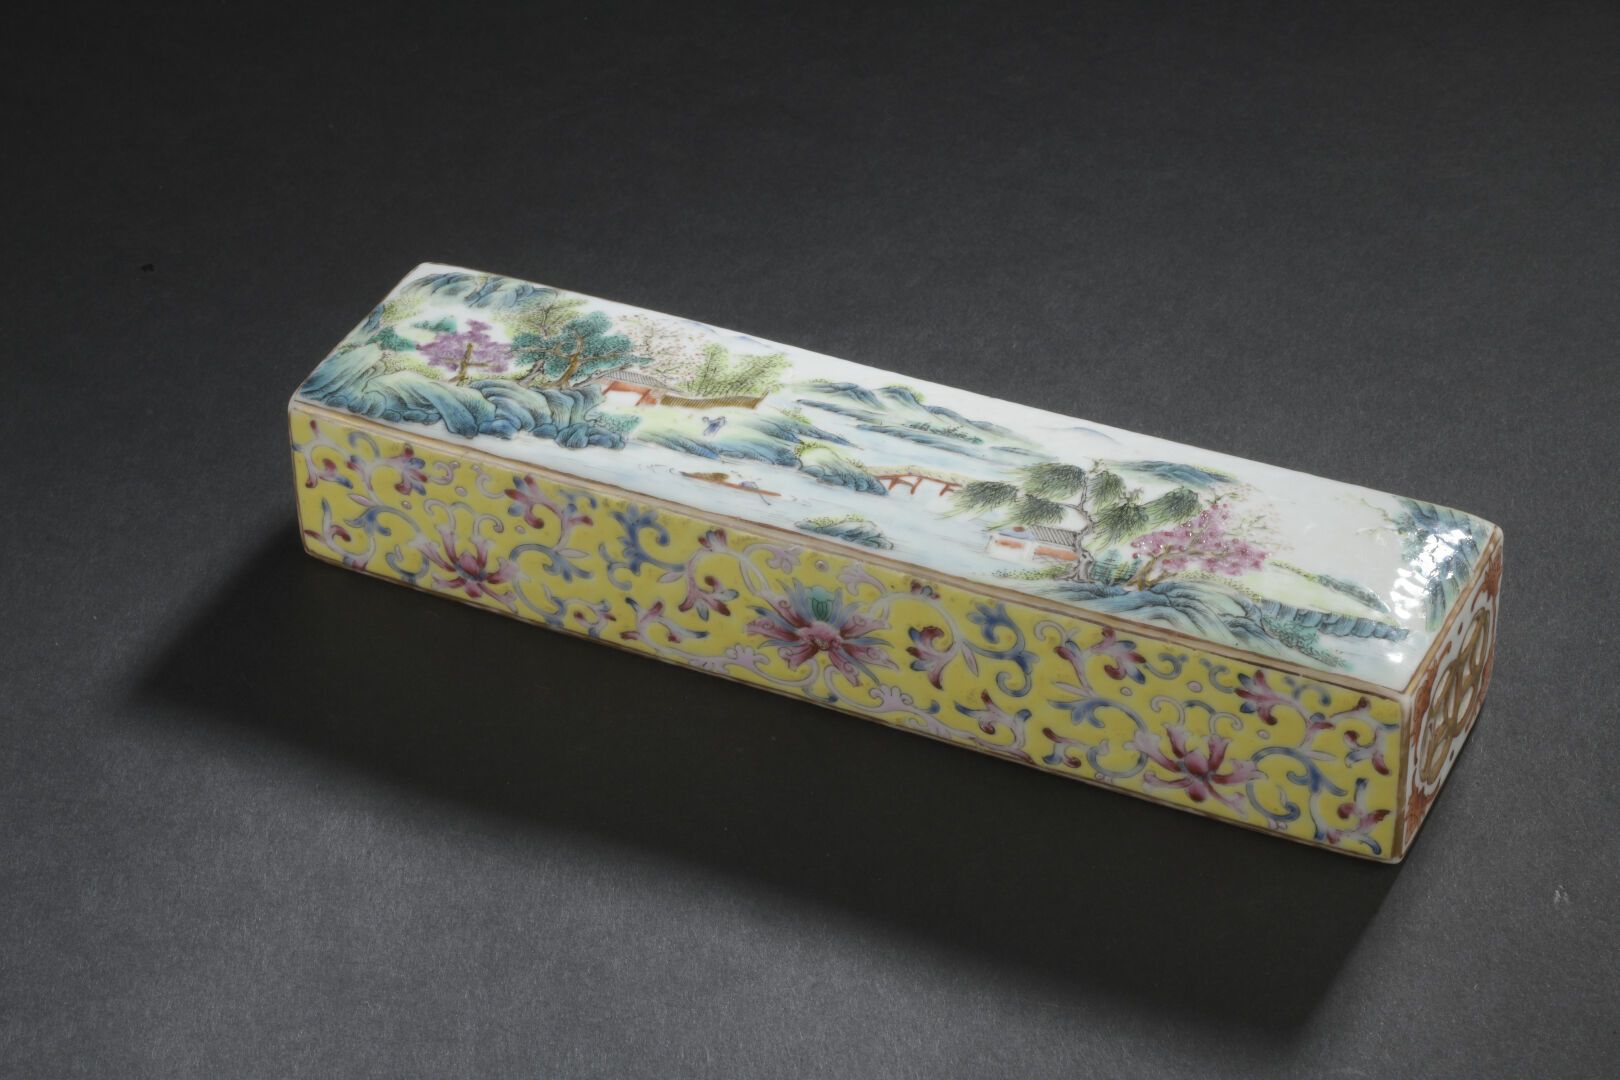 Null 瓷器压纸机
中国，晚清 (1644-1911)
长方形，顶部装饰有湖光山色中的人物和房屋，两边宽的地方绘有莲花和叶子的卷轴，另外两边镂空有沙比利。
3&hellip;